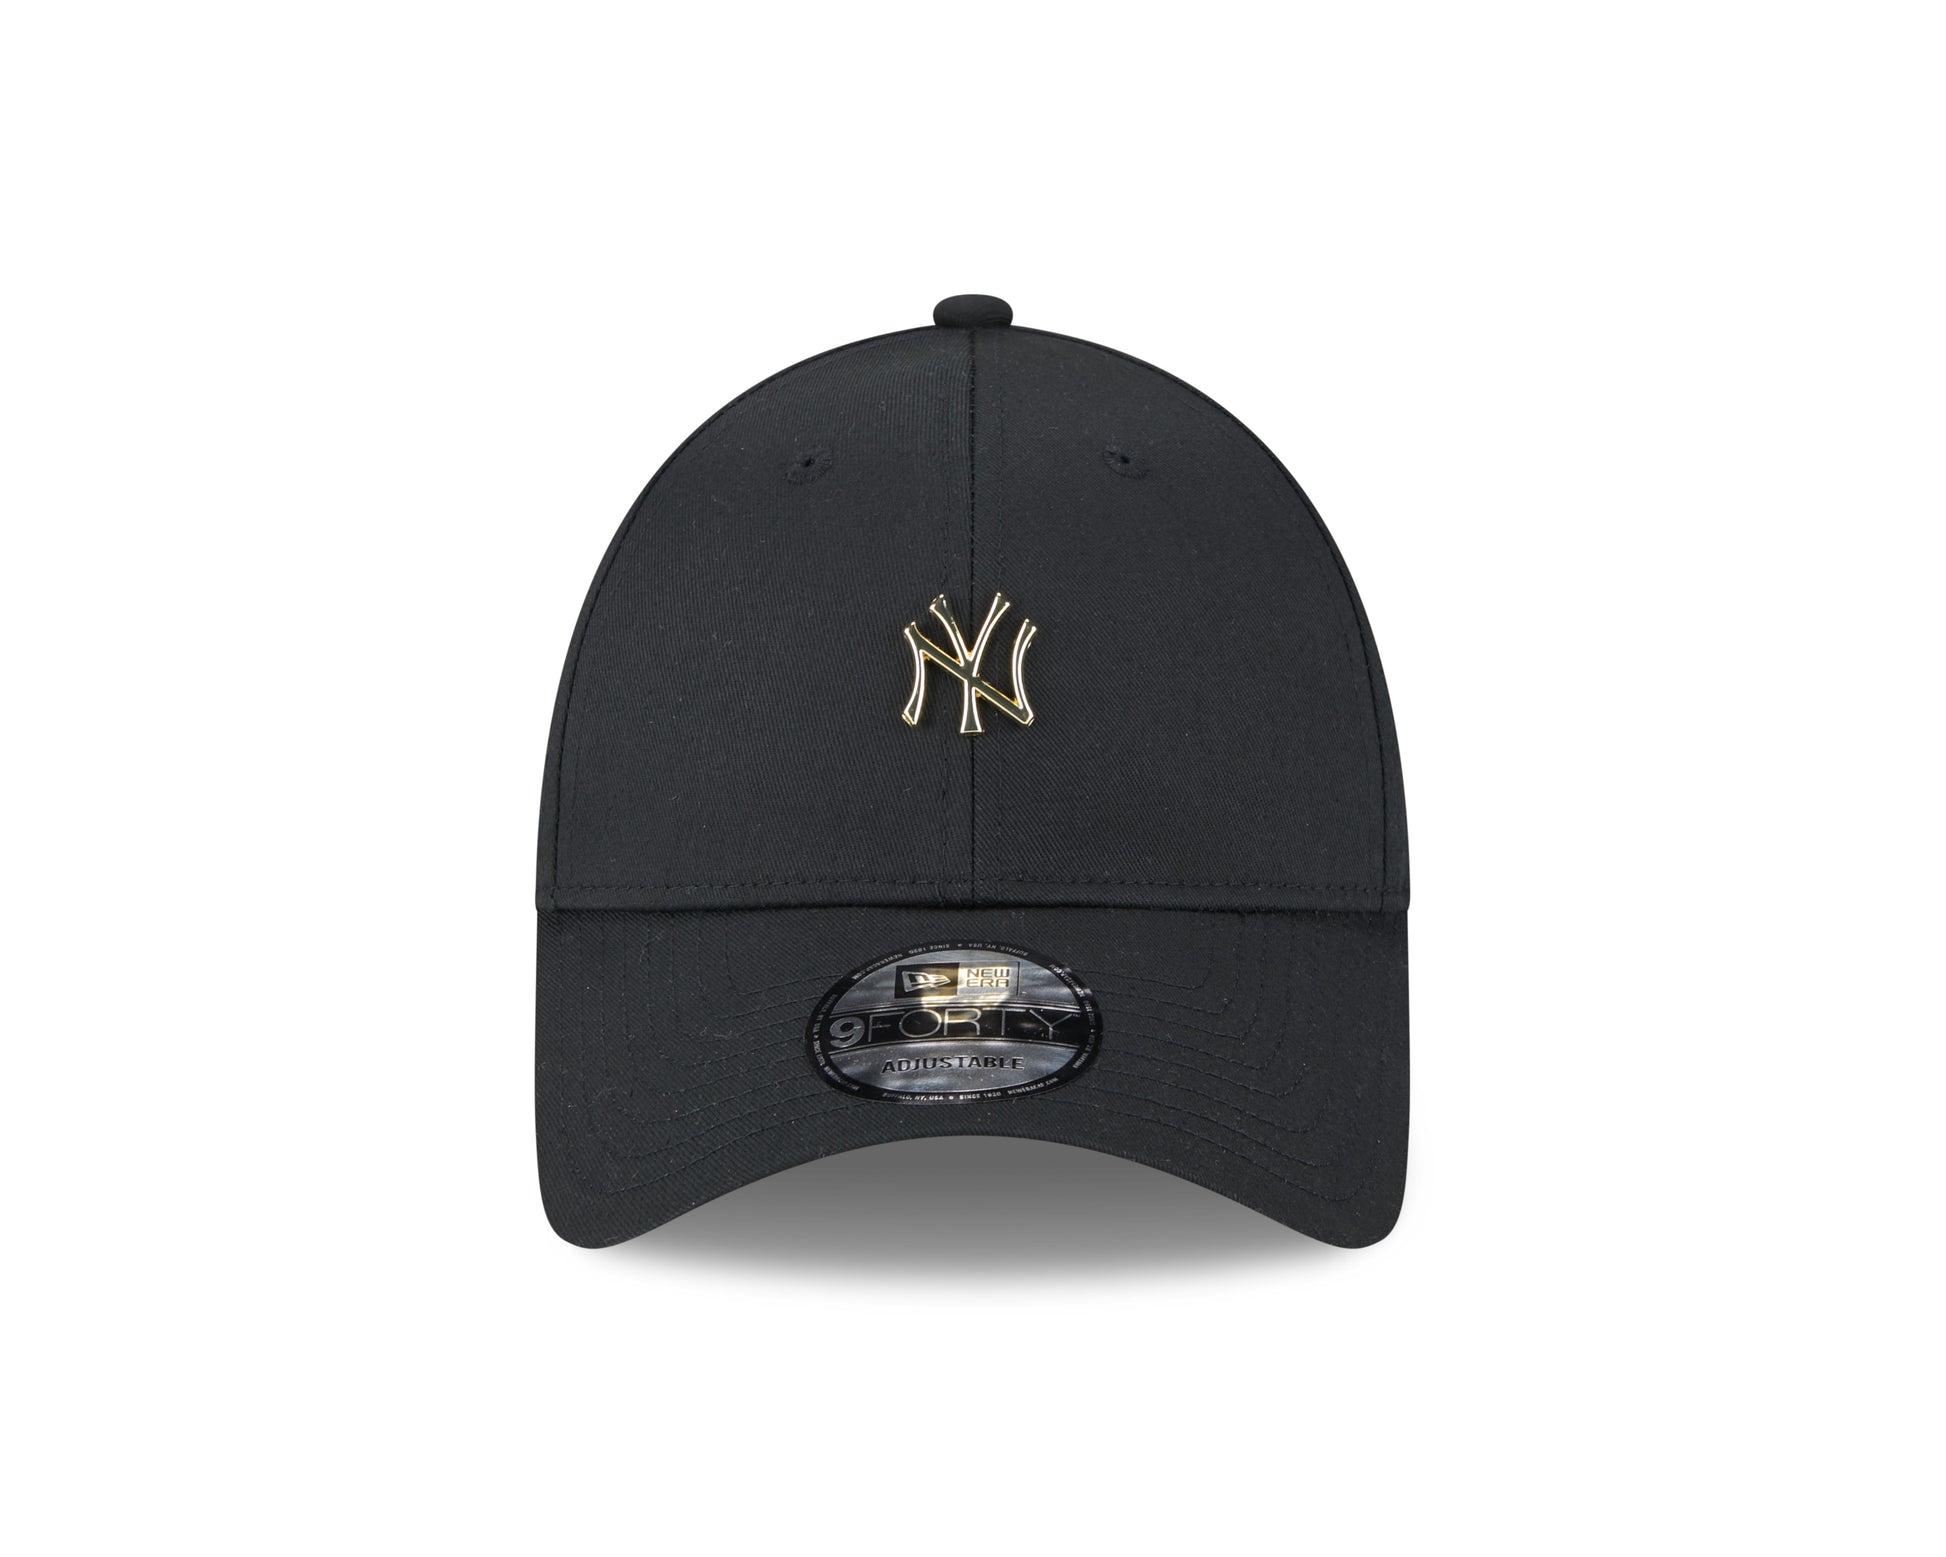 New Era - PIN - New York Yankees 9Forty - Black - Headz Up 